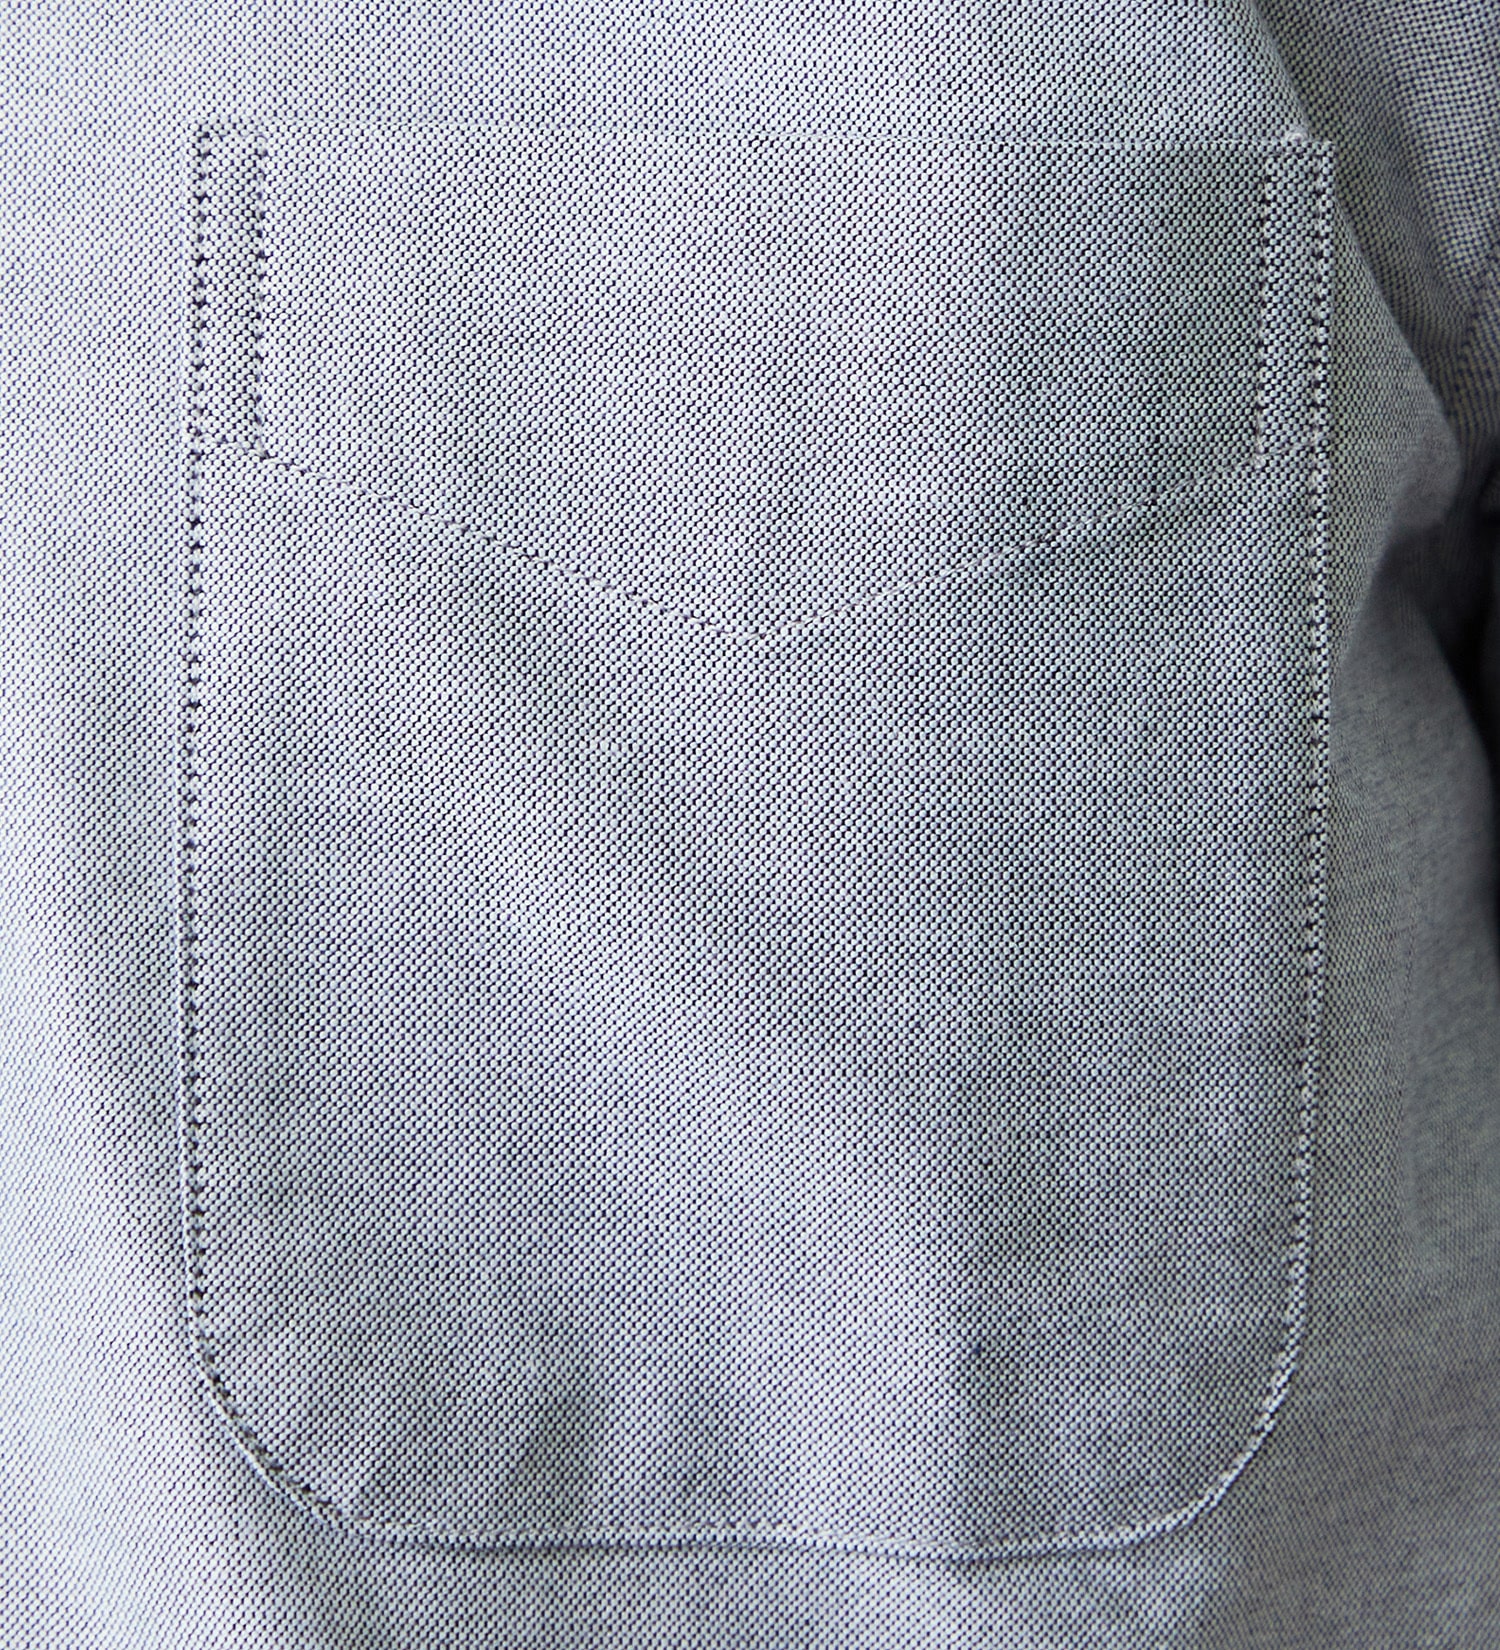 EDWIN(エドウイン)の半袖 ボタンダウンシャツ|トップス/シャツ/ブラウス/メンズ|ブラック